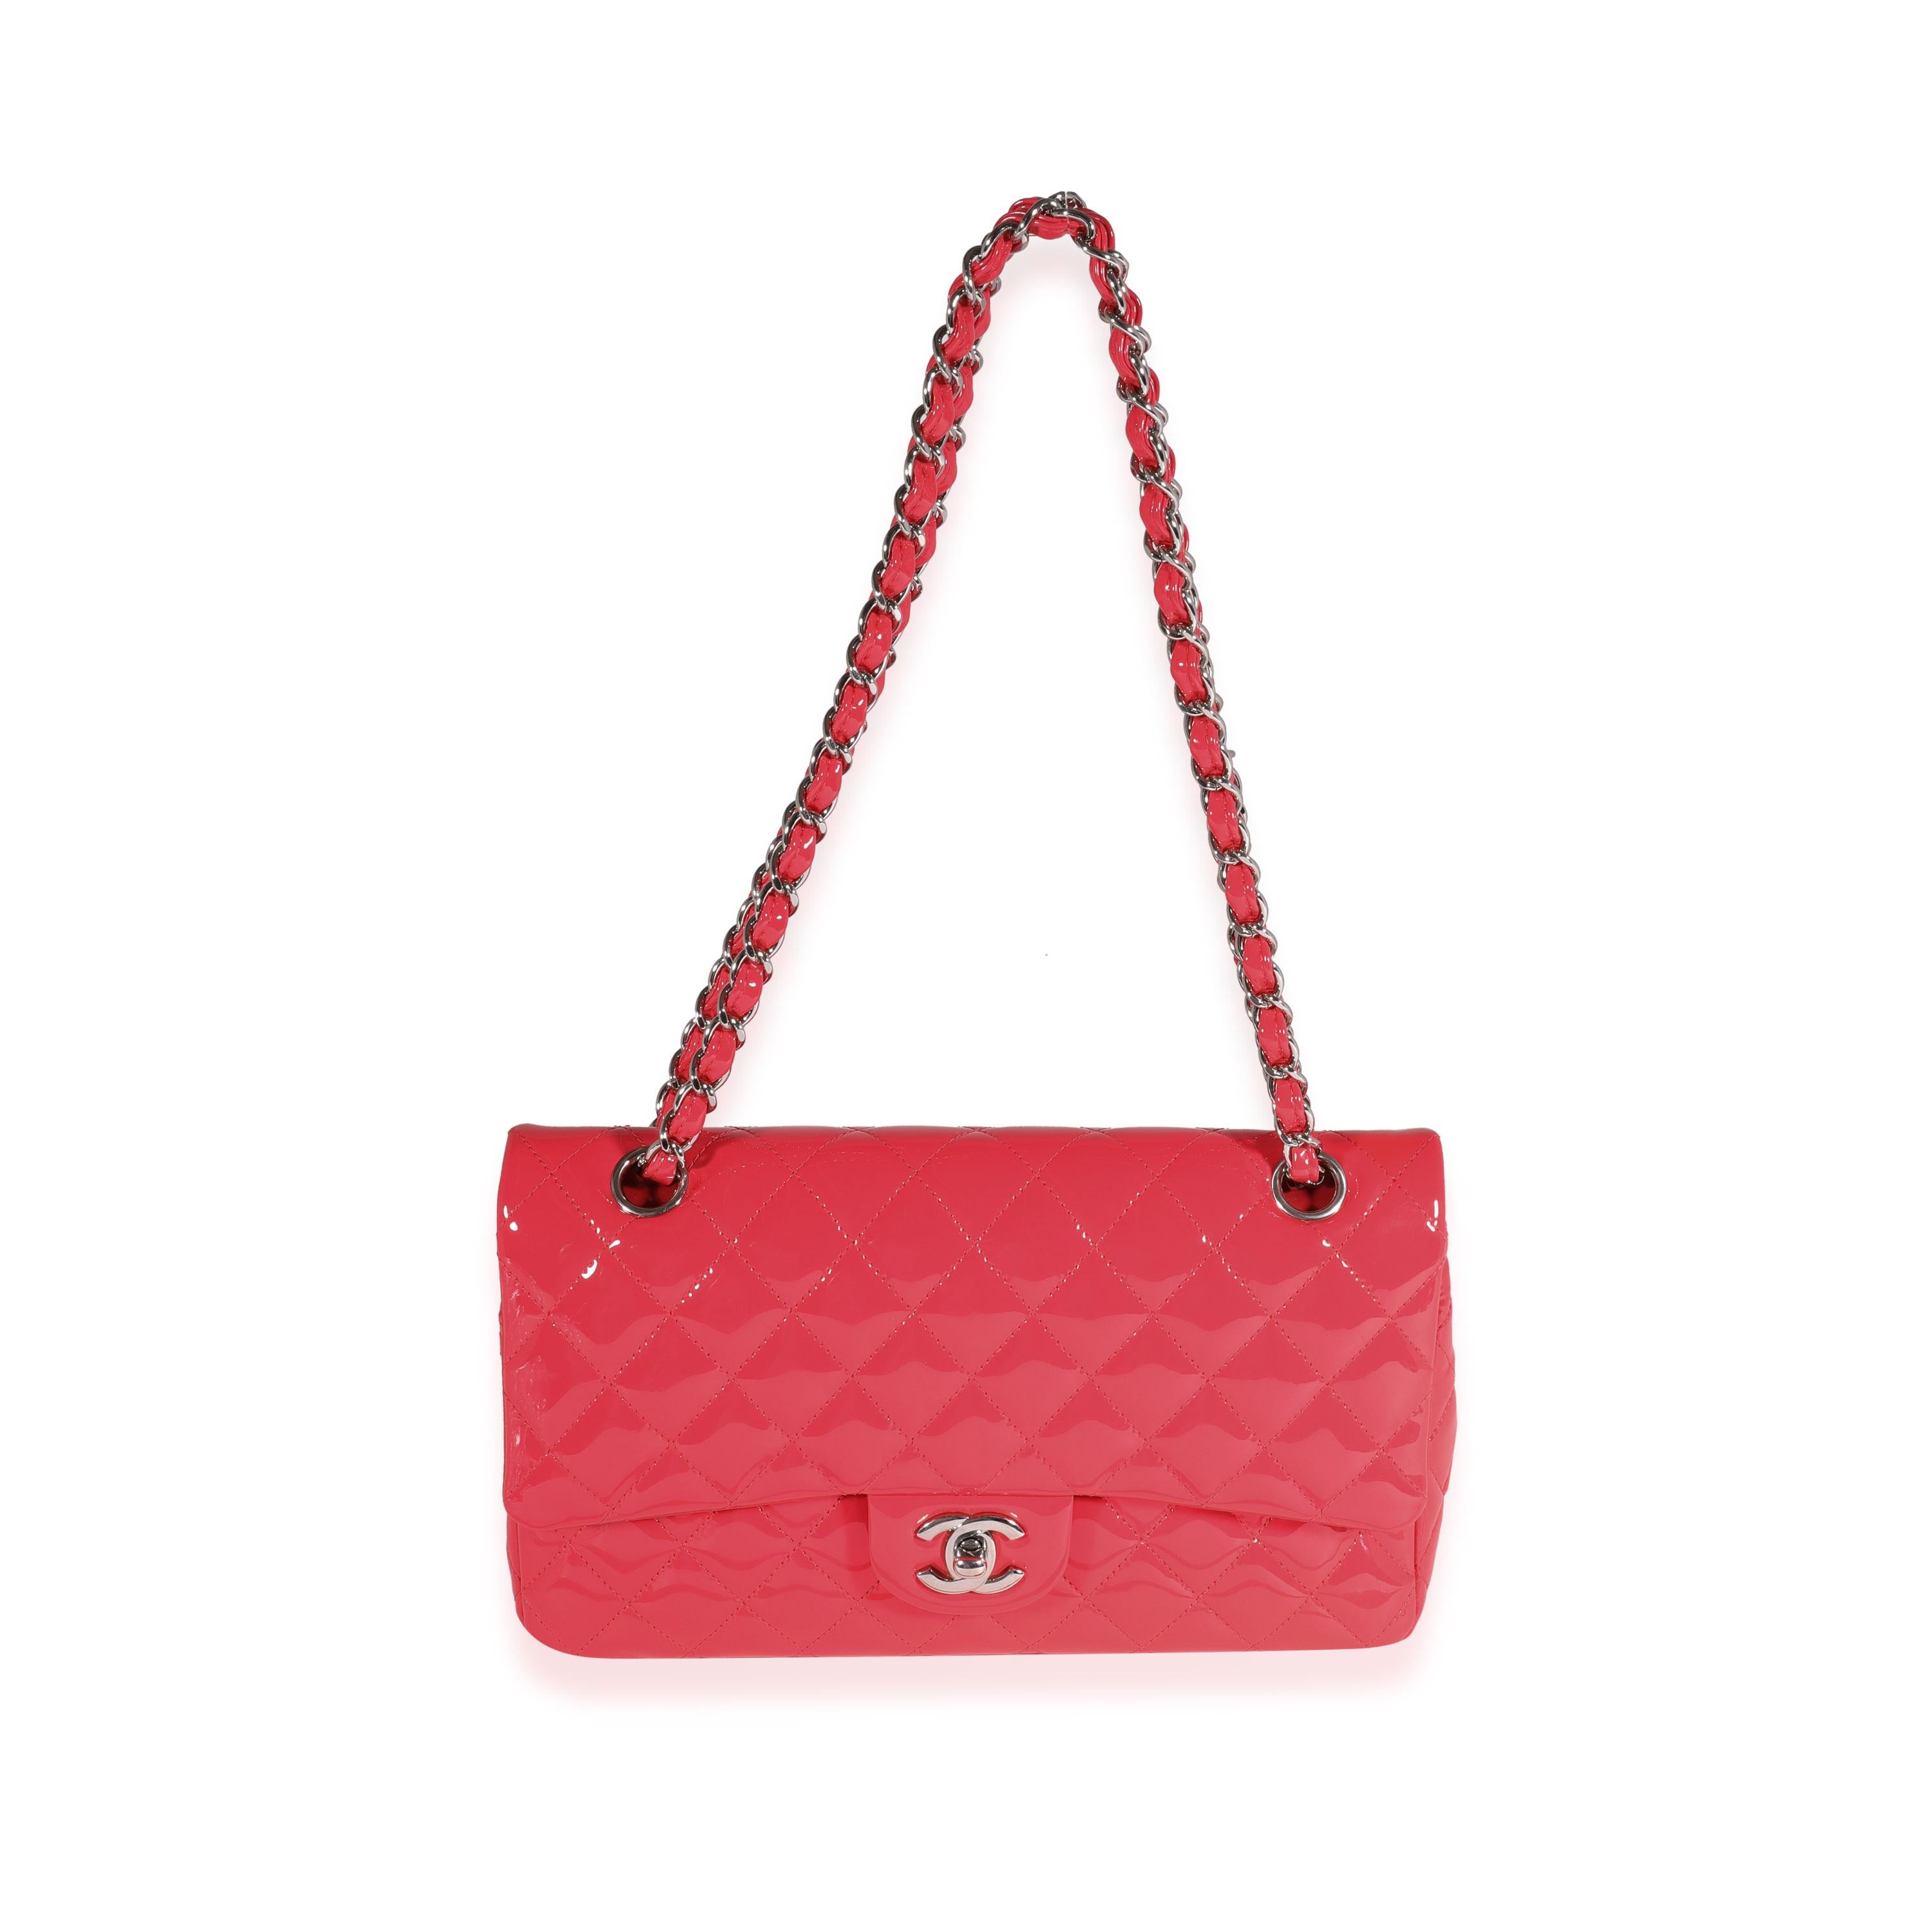 Titre de l'annonce : Chanel Candy Pink Quilted Patent Leather Medium Classic Double Flap Bag
SKU : 121750
PDSF : 8800.00
Condit : Usagé 
Condition du sac à main : Excellent
Commentaires sur l'état : Excellent état. Un peu de plastique au niveau de